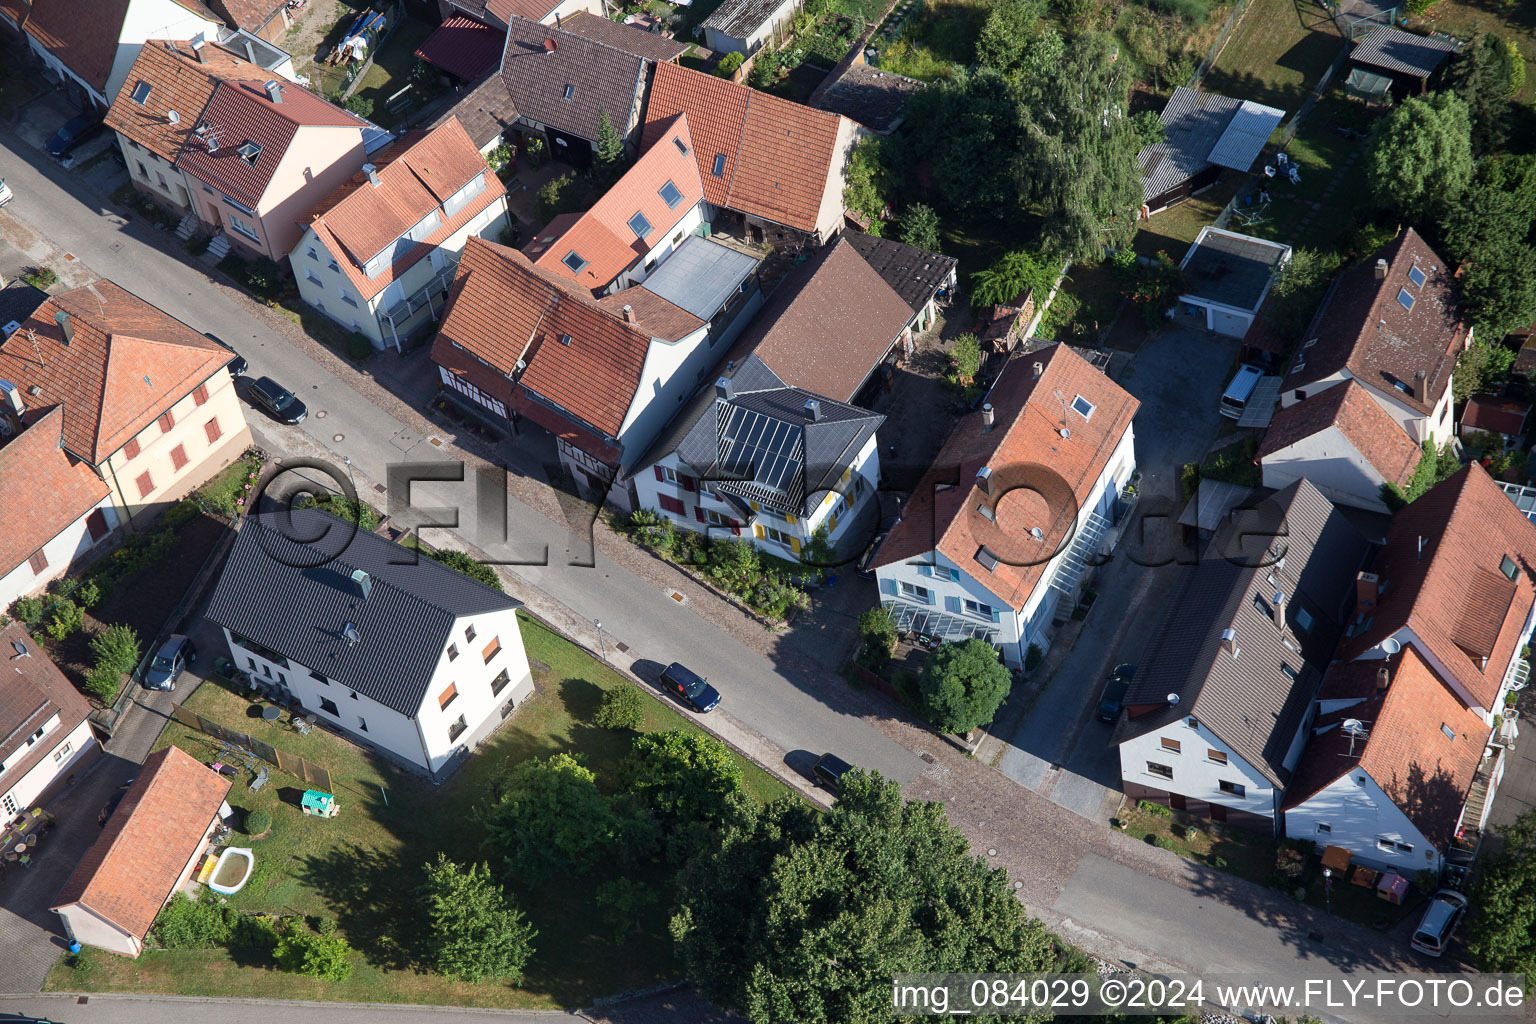 Ortsteil Schluttenbach in Ettlingen im Bundesland Baden-Württemberg, Deutschland aus der Luft betrachtet